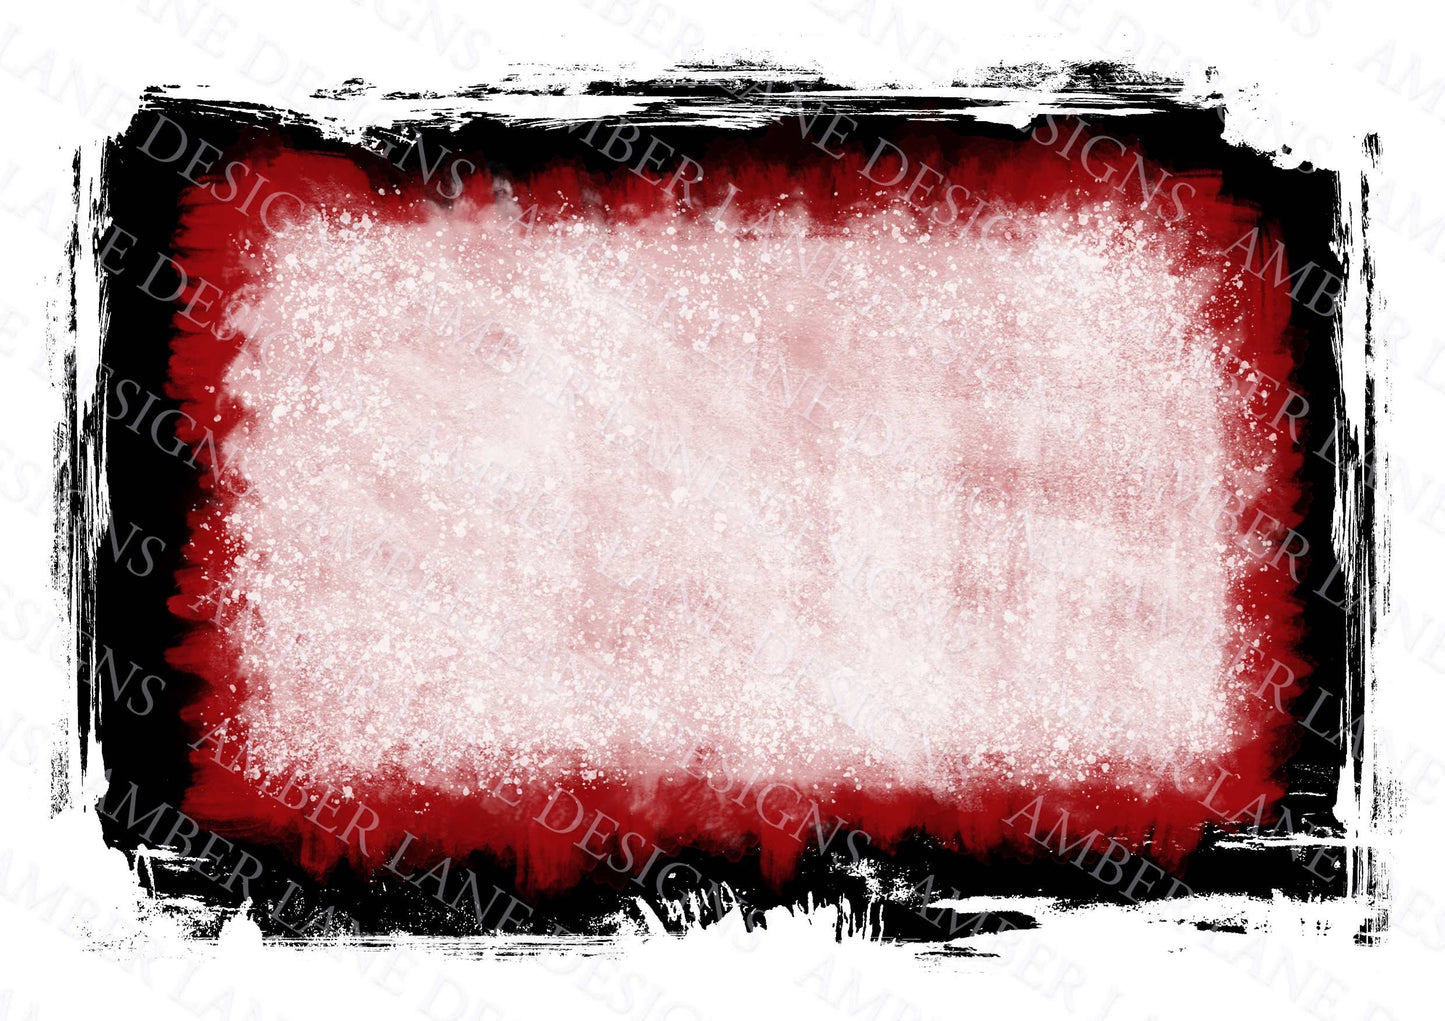 Red bleach grunge background, Halloween background, backsplash frame ,png file only